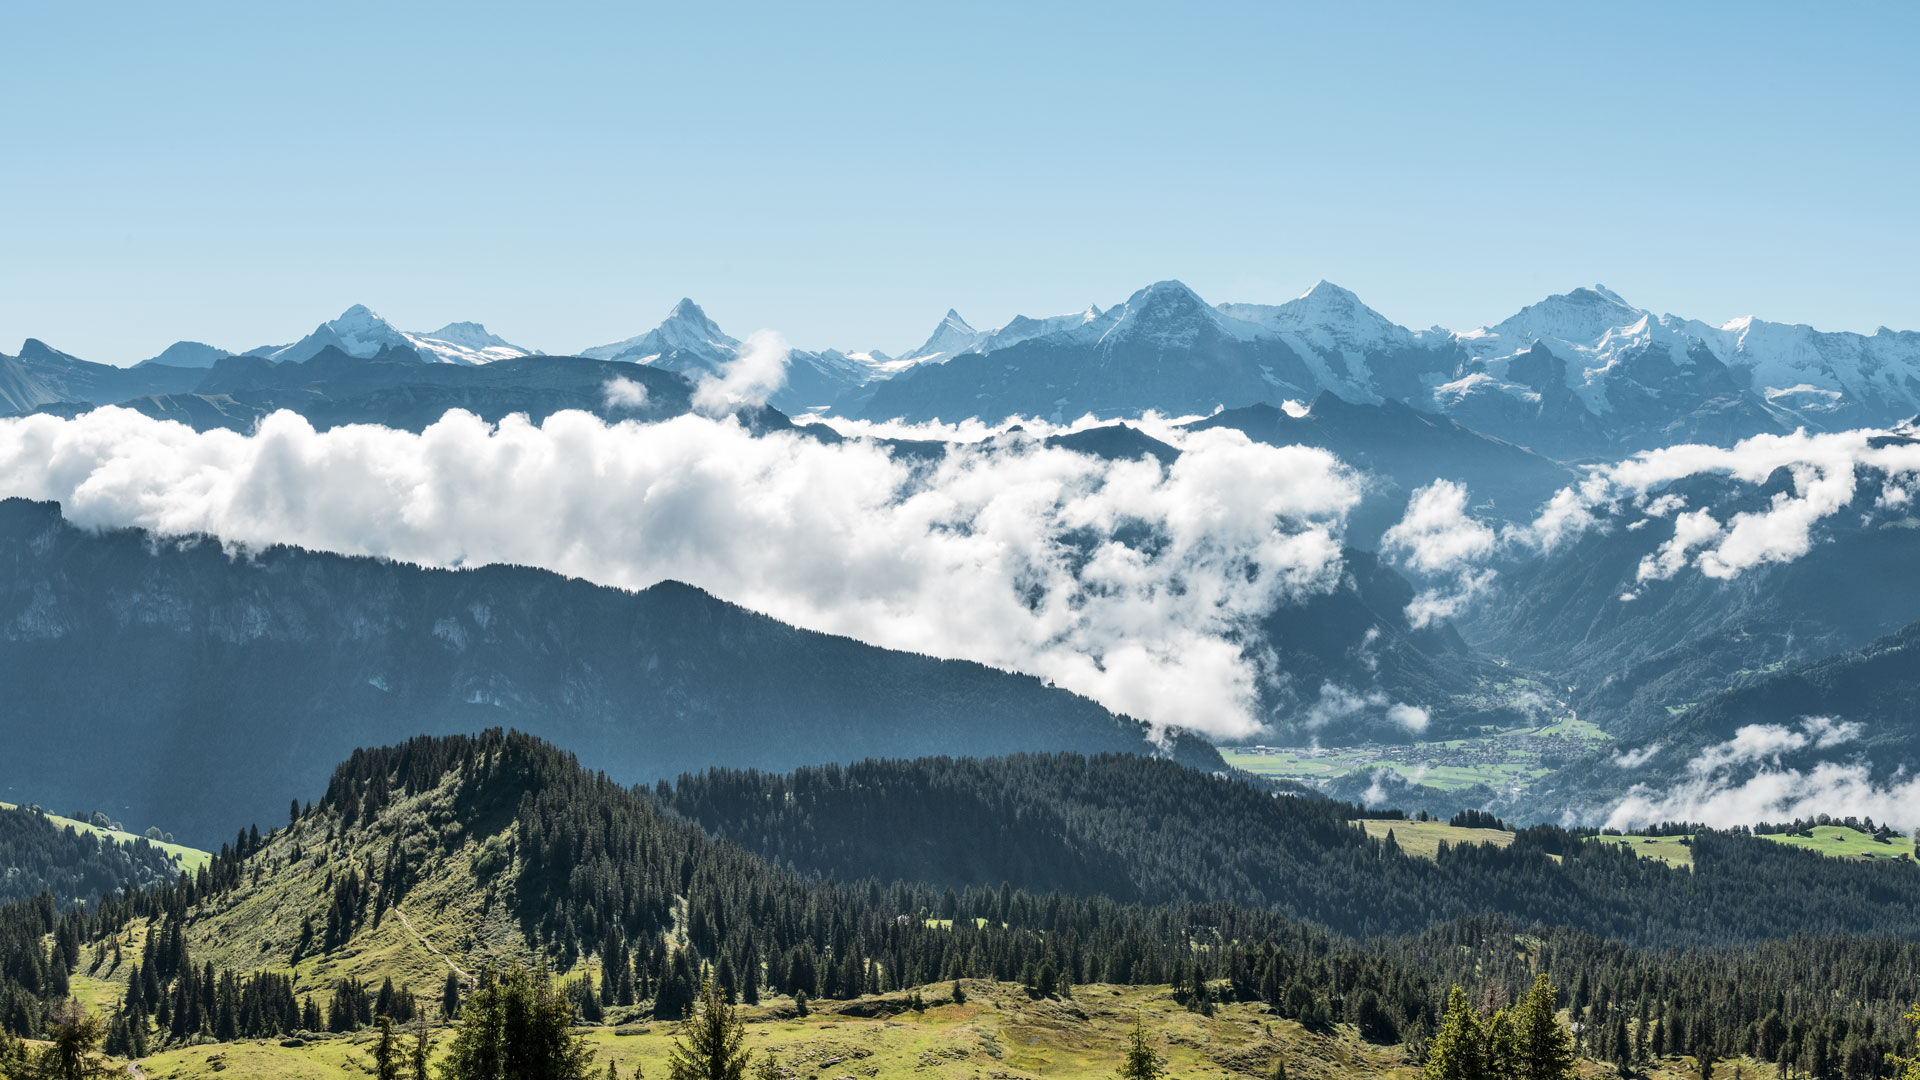 Weitblick auf Wetterhorn, Schreckhorn, Finsteraarhorn, Eiger, Mönch und Jungfrau.